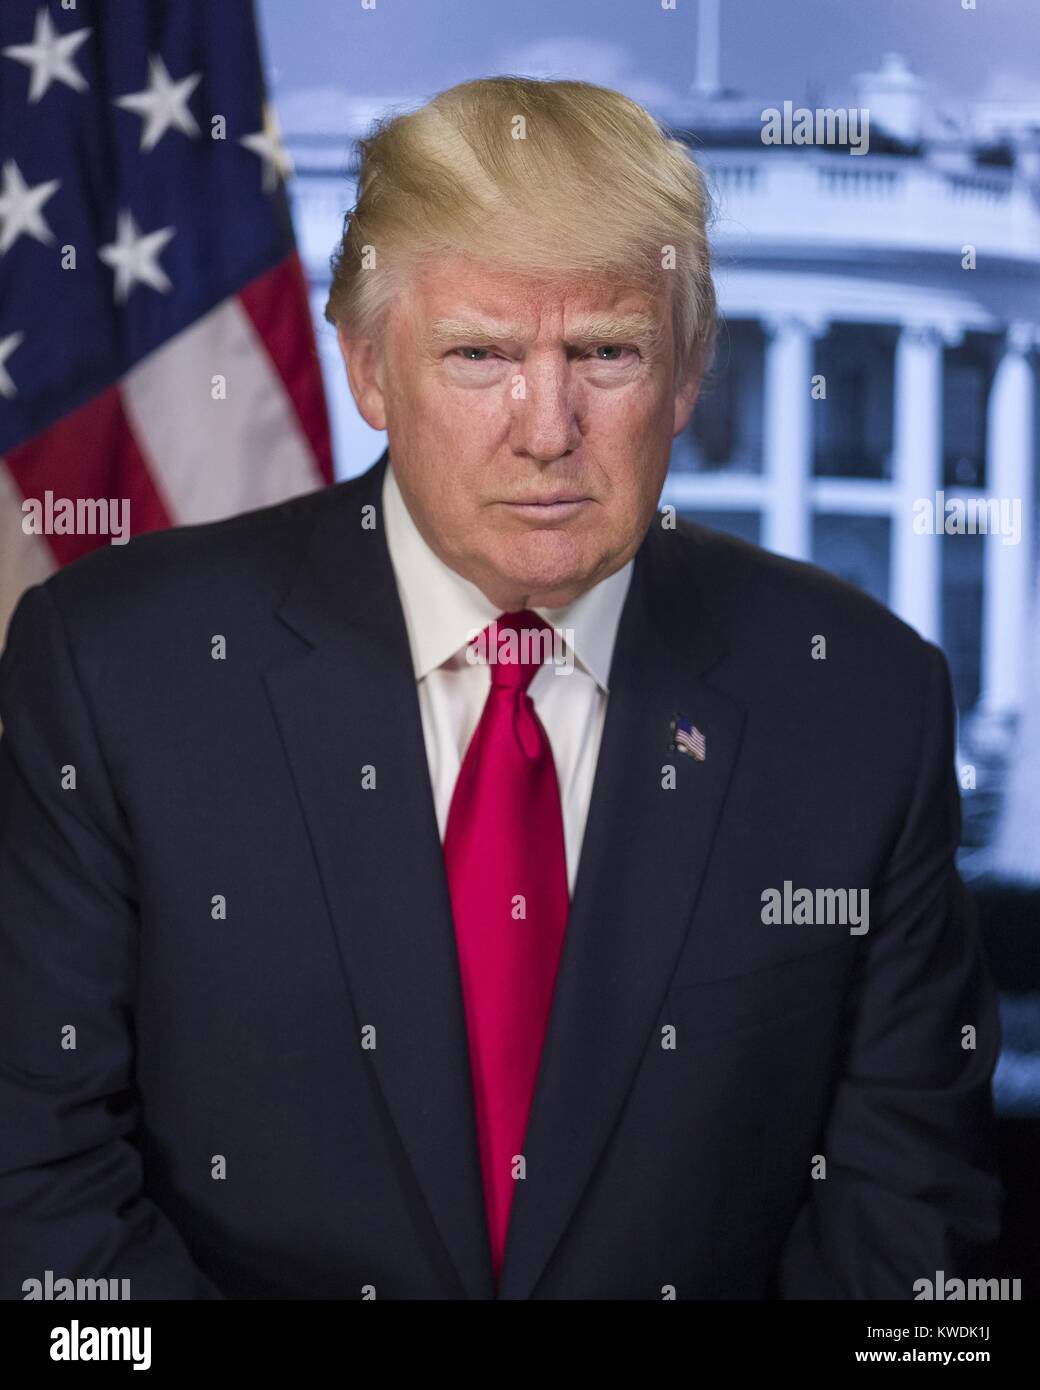 Le président Donald Trump dans un portrait publié sur le site de la Maison  Blanche le 20 janvier, 2017. La photo présente un président sans sourire  qui se penche en avant, portant